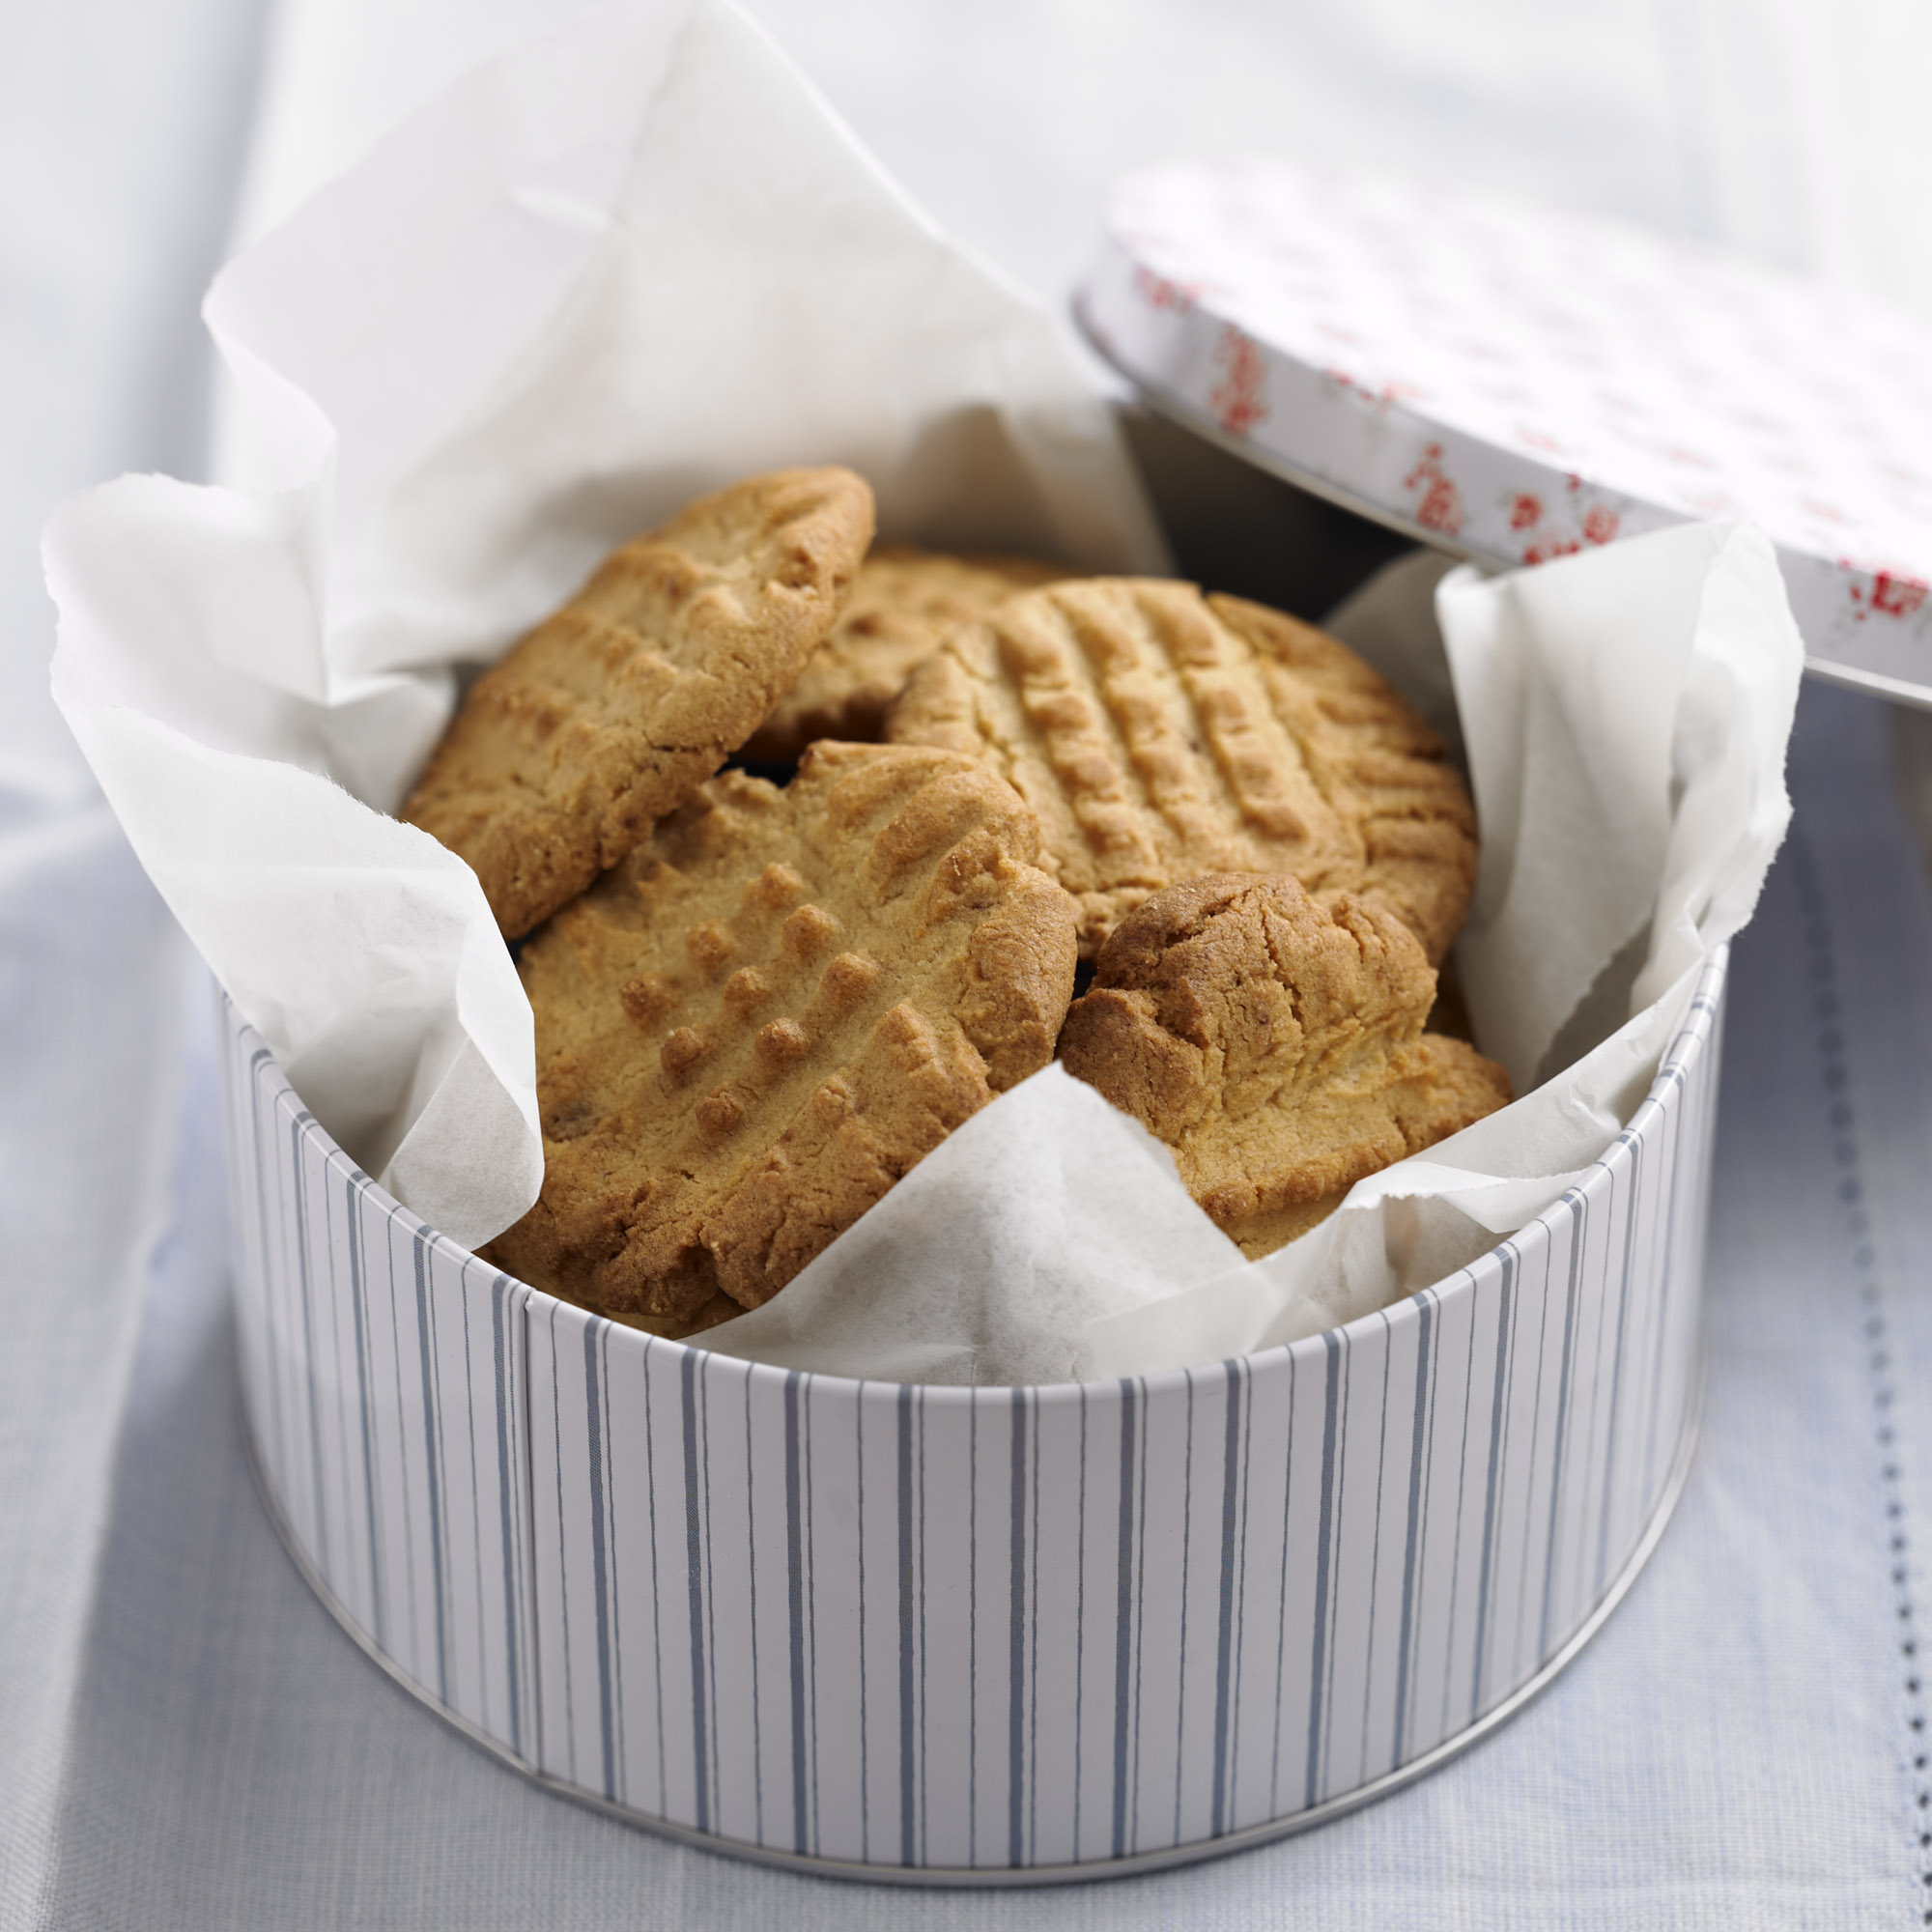 Peanut butter biscuits recipe